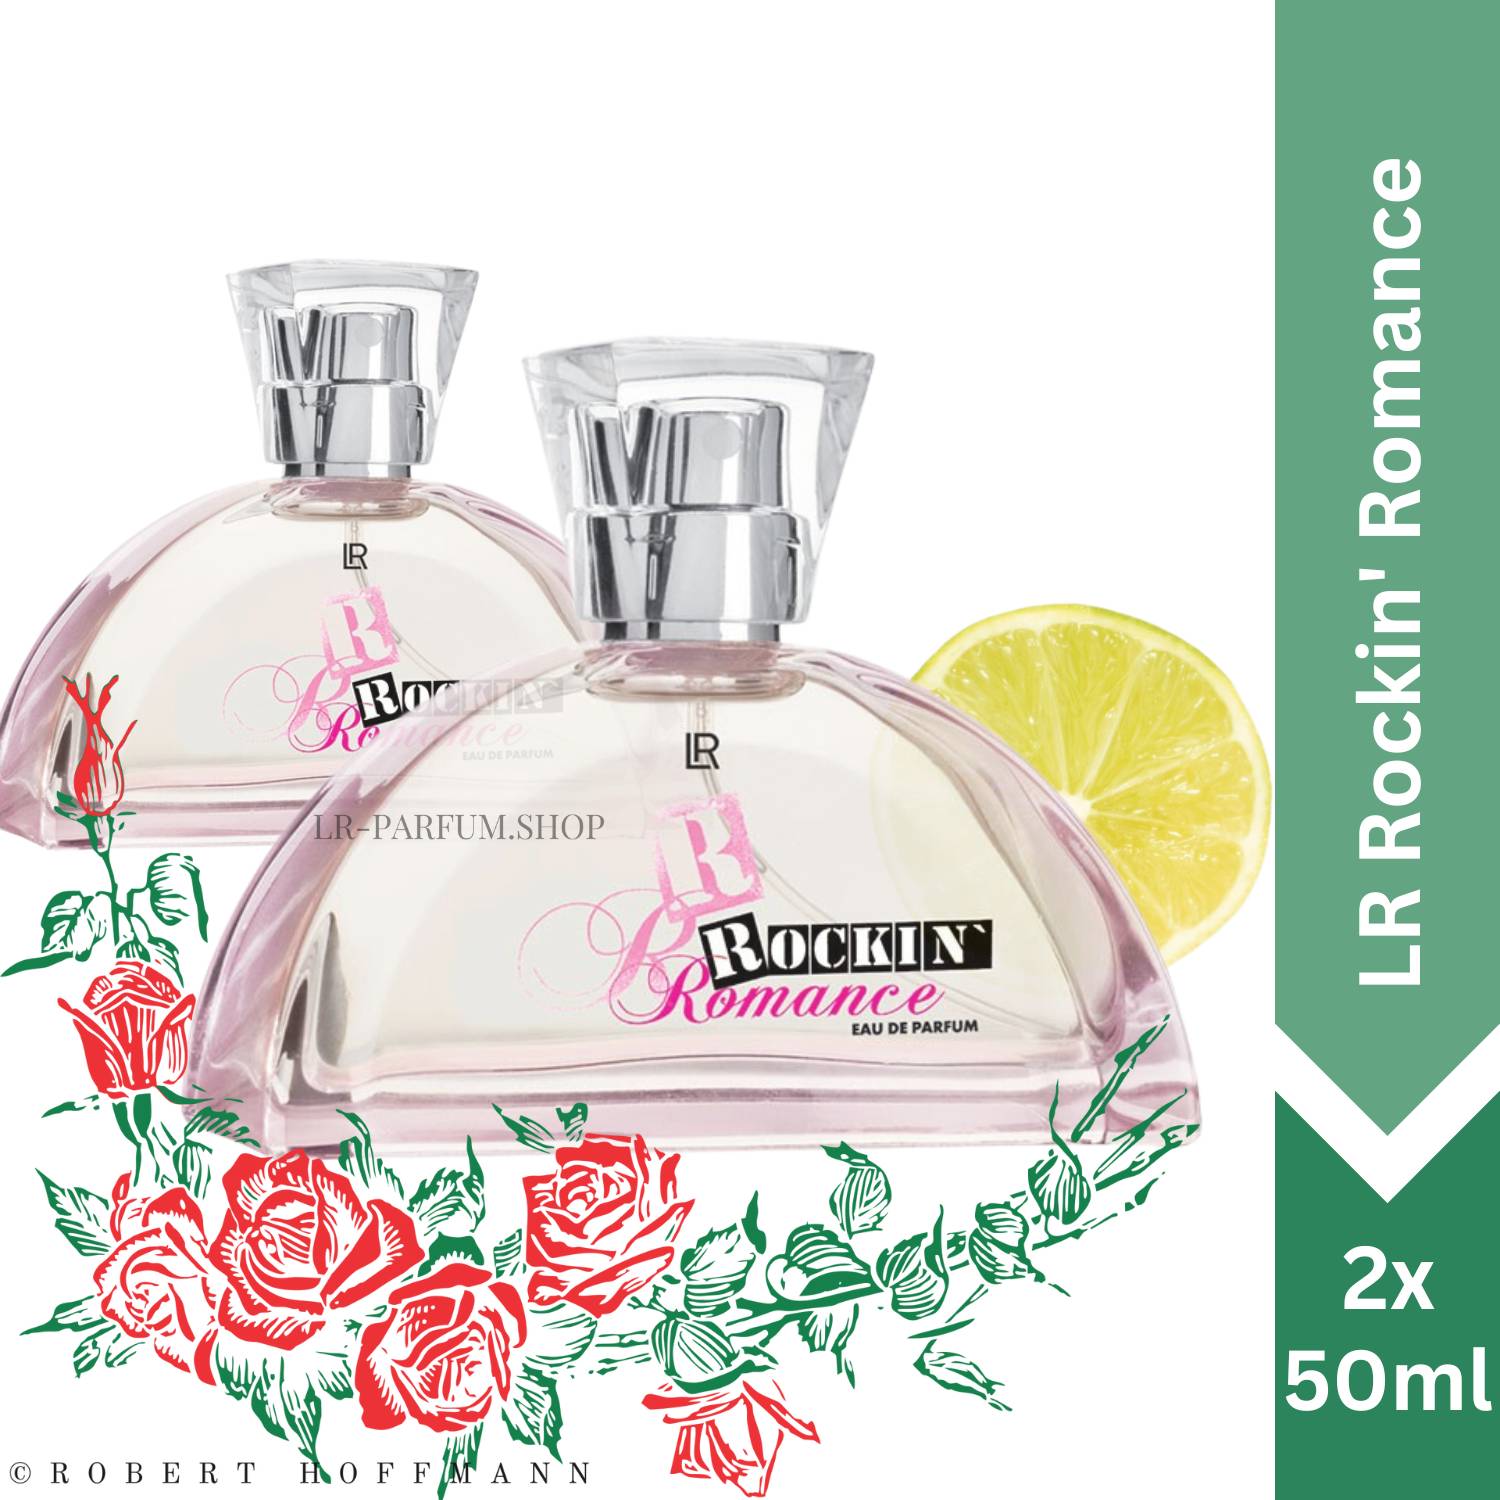 LR Rockin` Romance - Eau de Parfum, 2er Pack (2x50ml) - LR-Parfum.shop